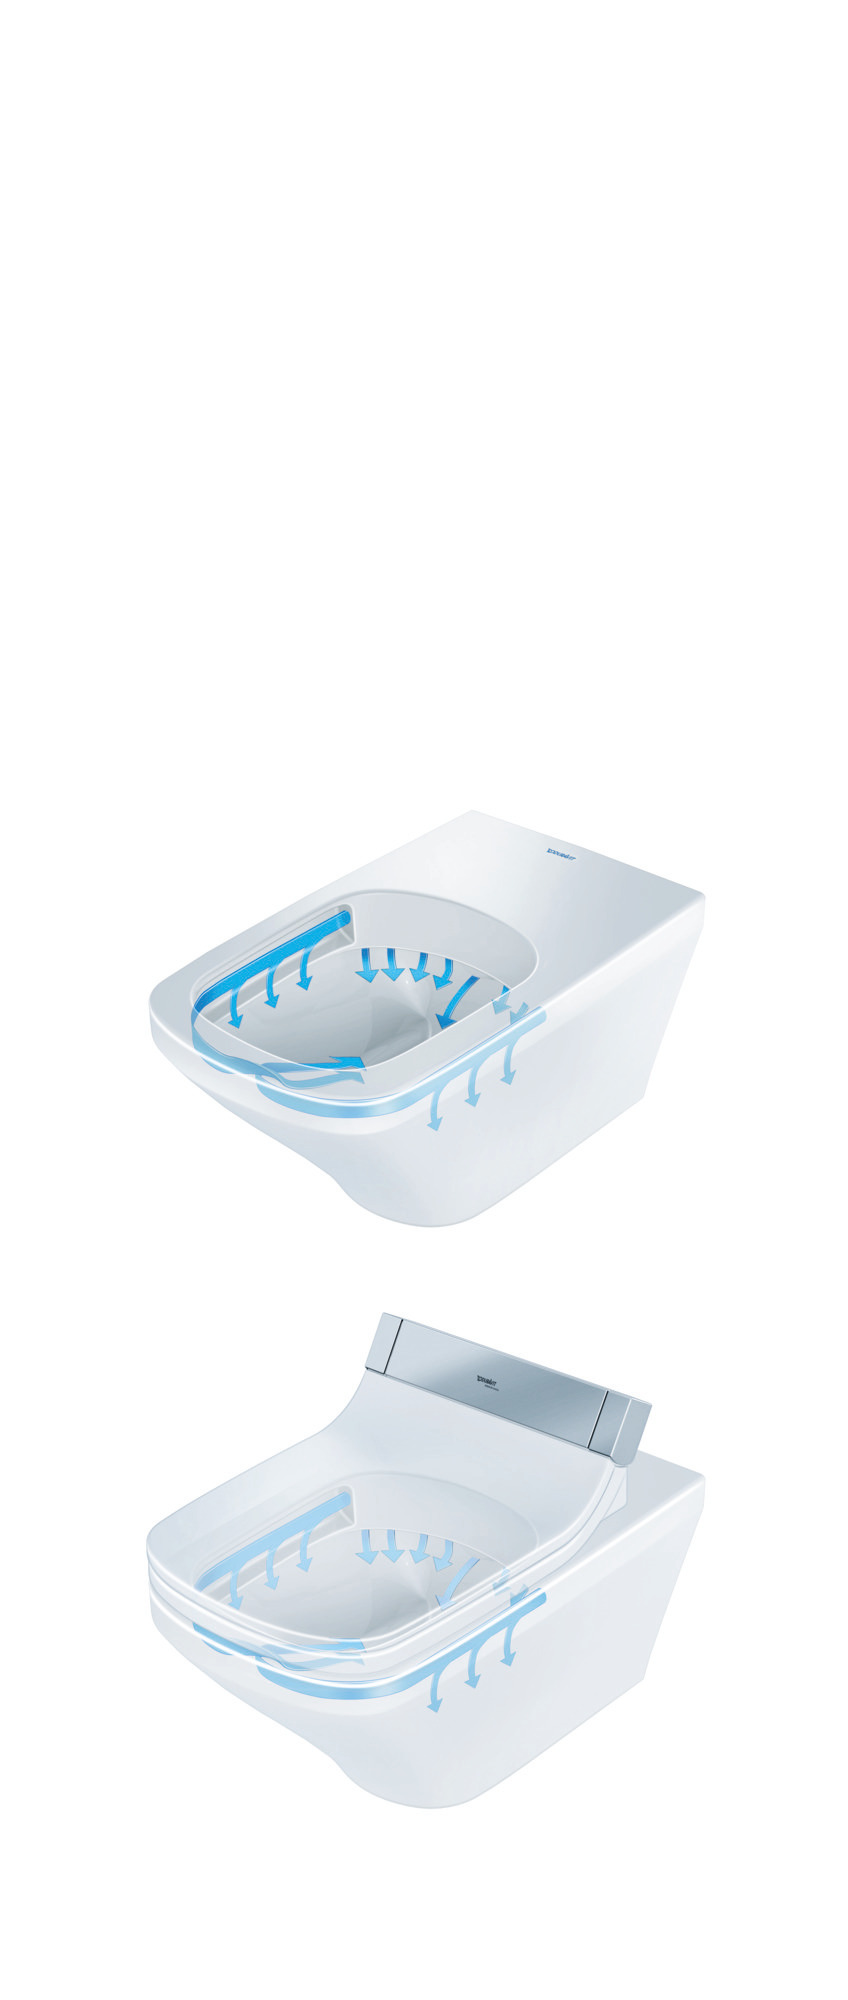 Wand-WC DuraStyle 620 mm, Tiefspüler Durafix, fürSW mitverd.Anschl., weiß